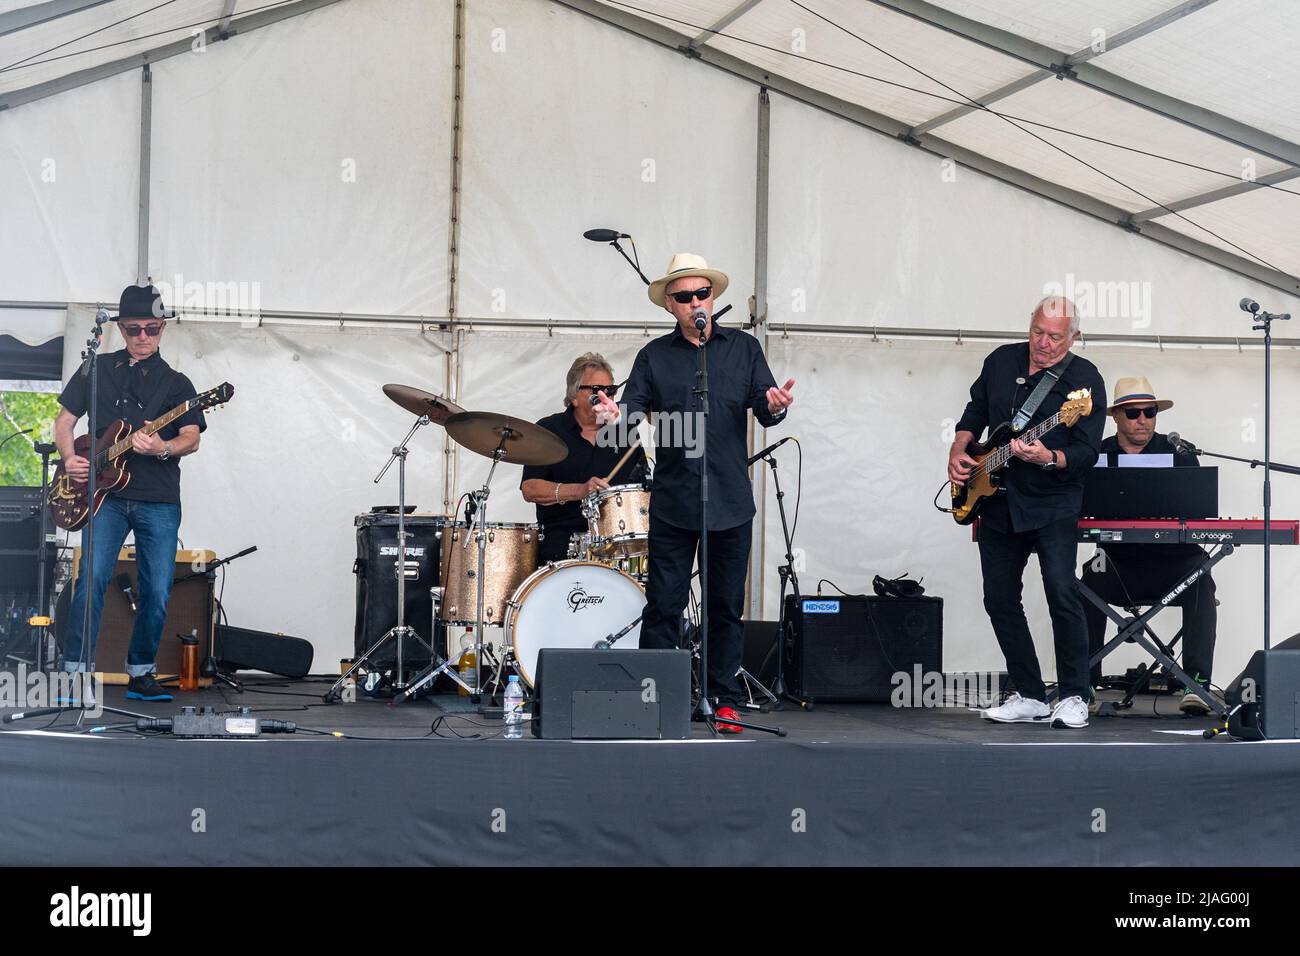 Die Rockin Rogers, eine klassische Rockband, tritt auf der Bühne bei einem Event in Farnborough, Hampshire, England, Großbritannien, auf Stockfoto